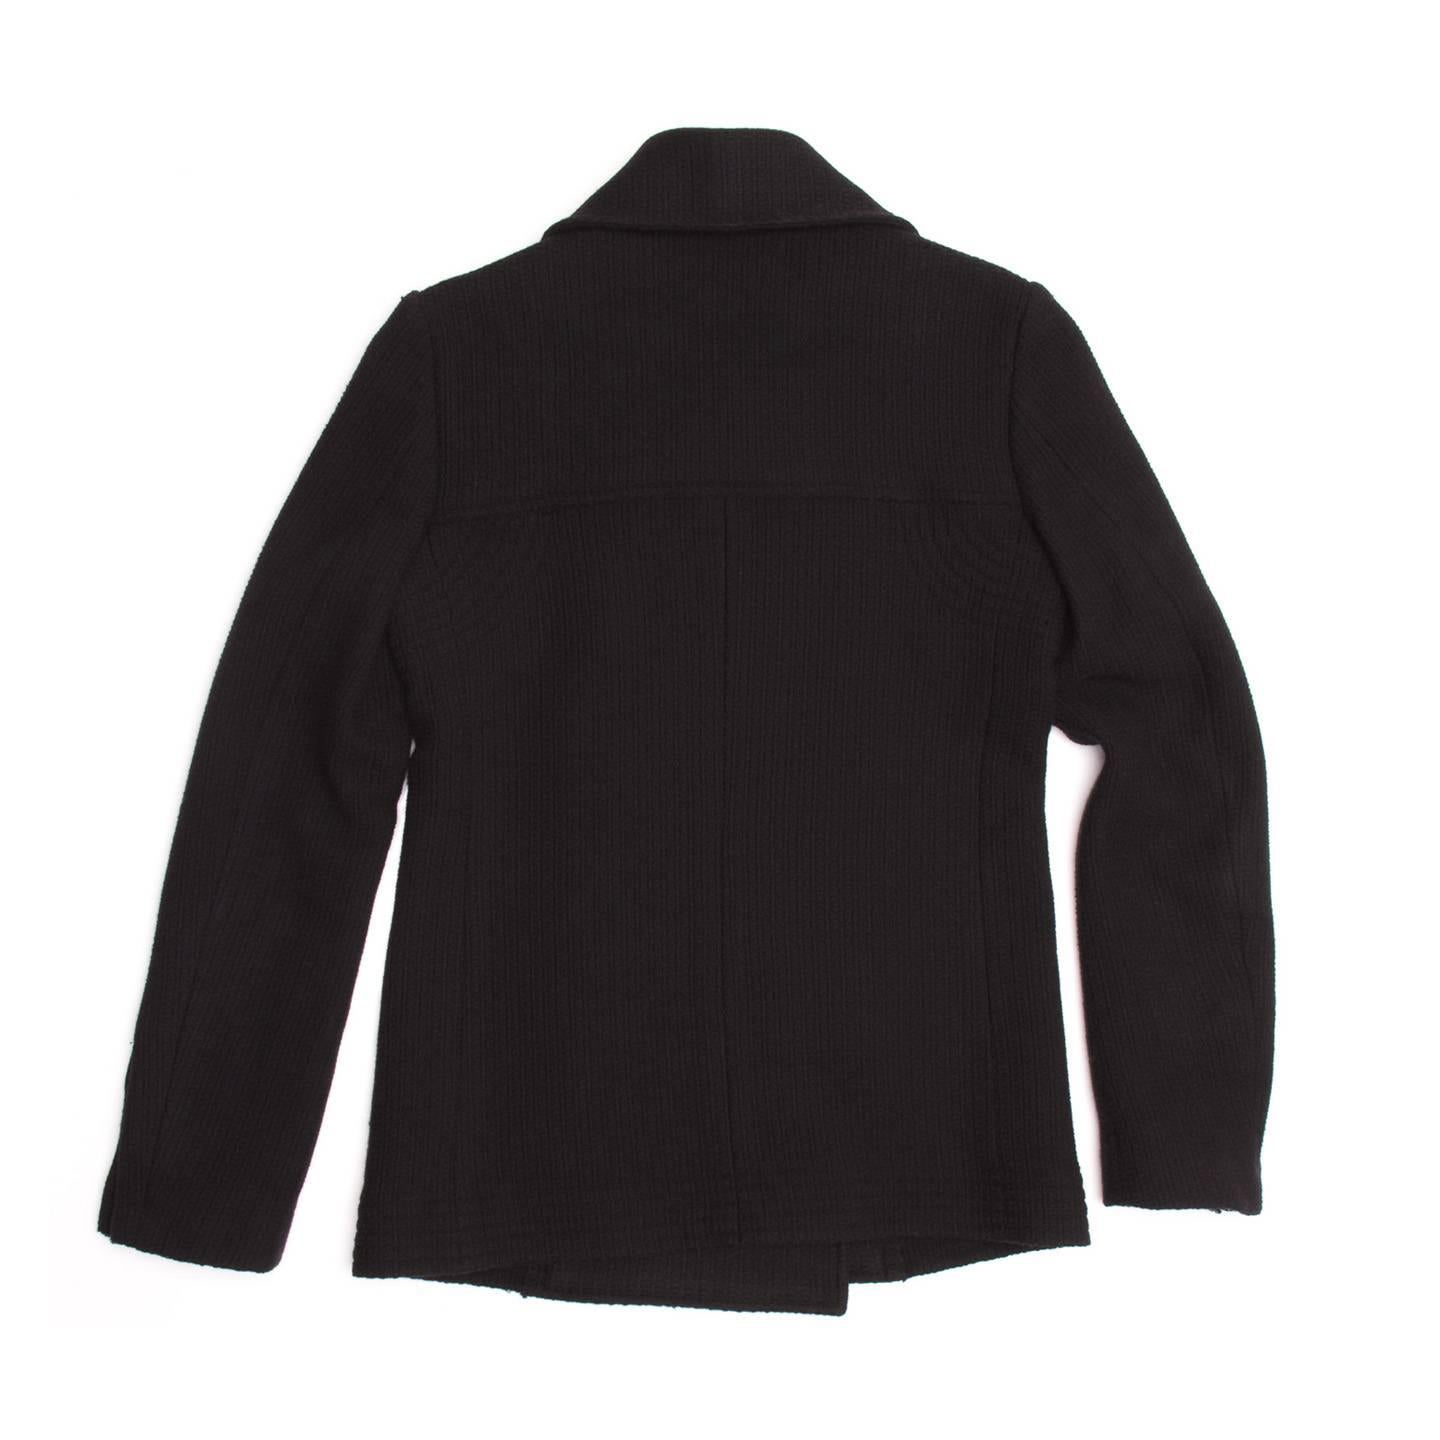 Women's Chanel Black Wool Peacoat Jacket